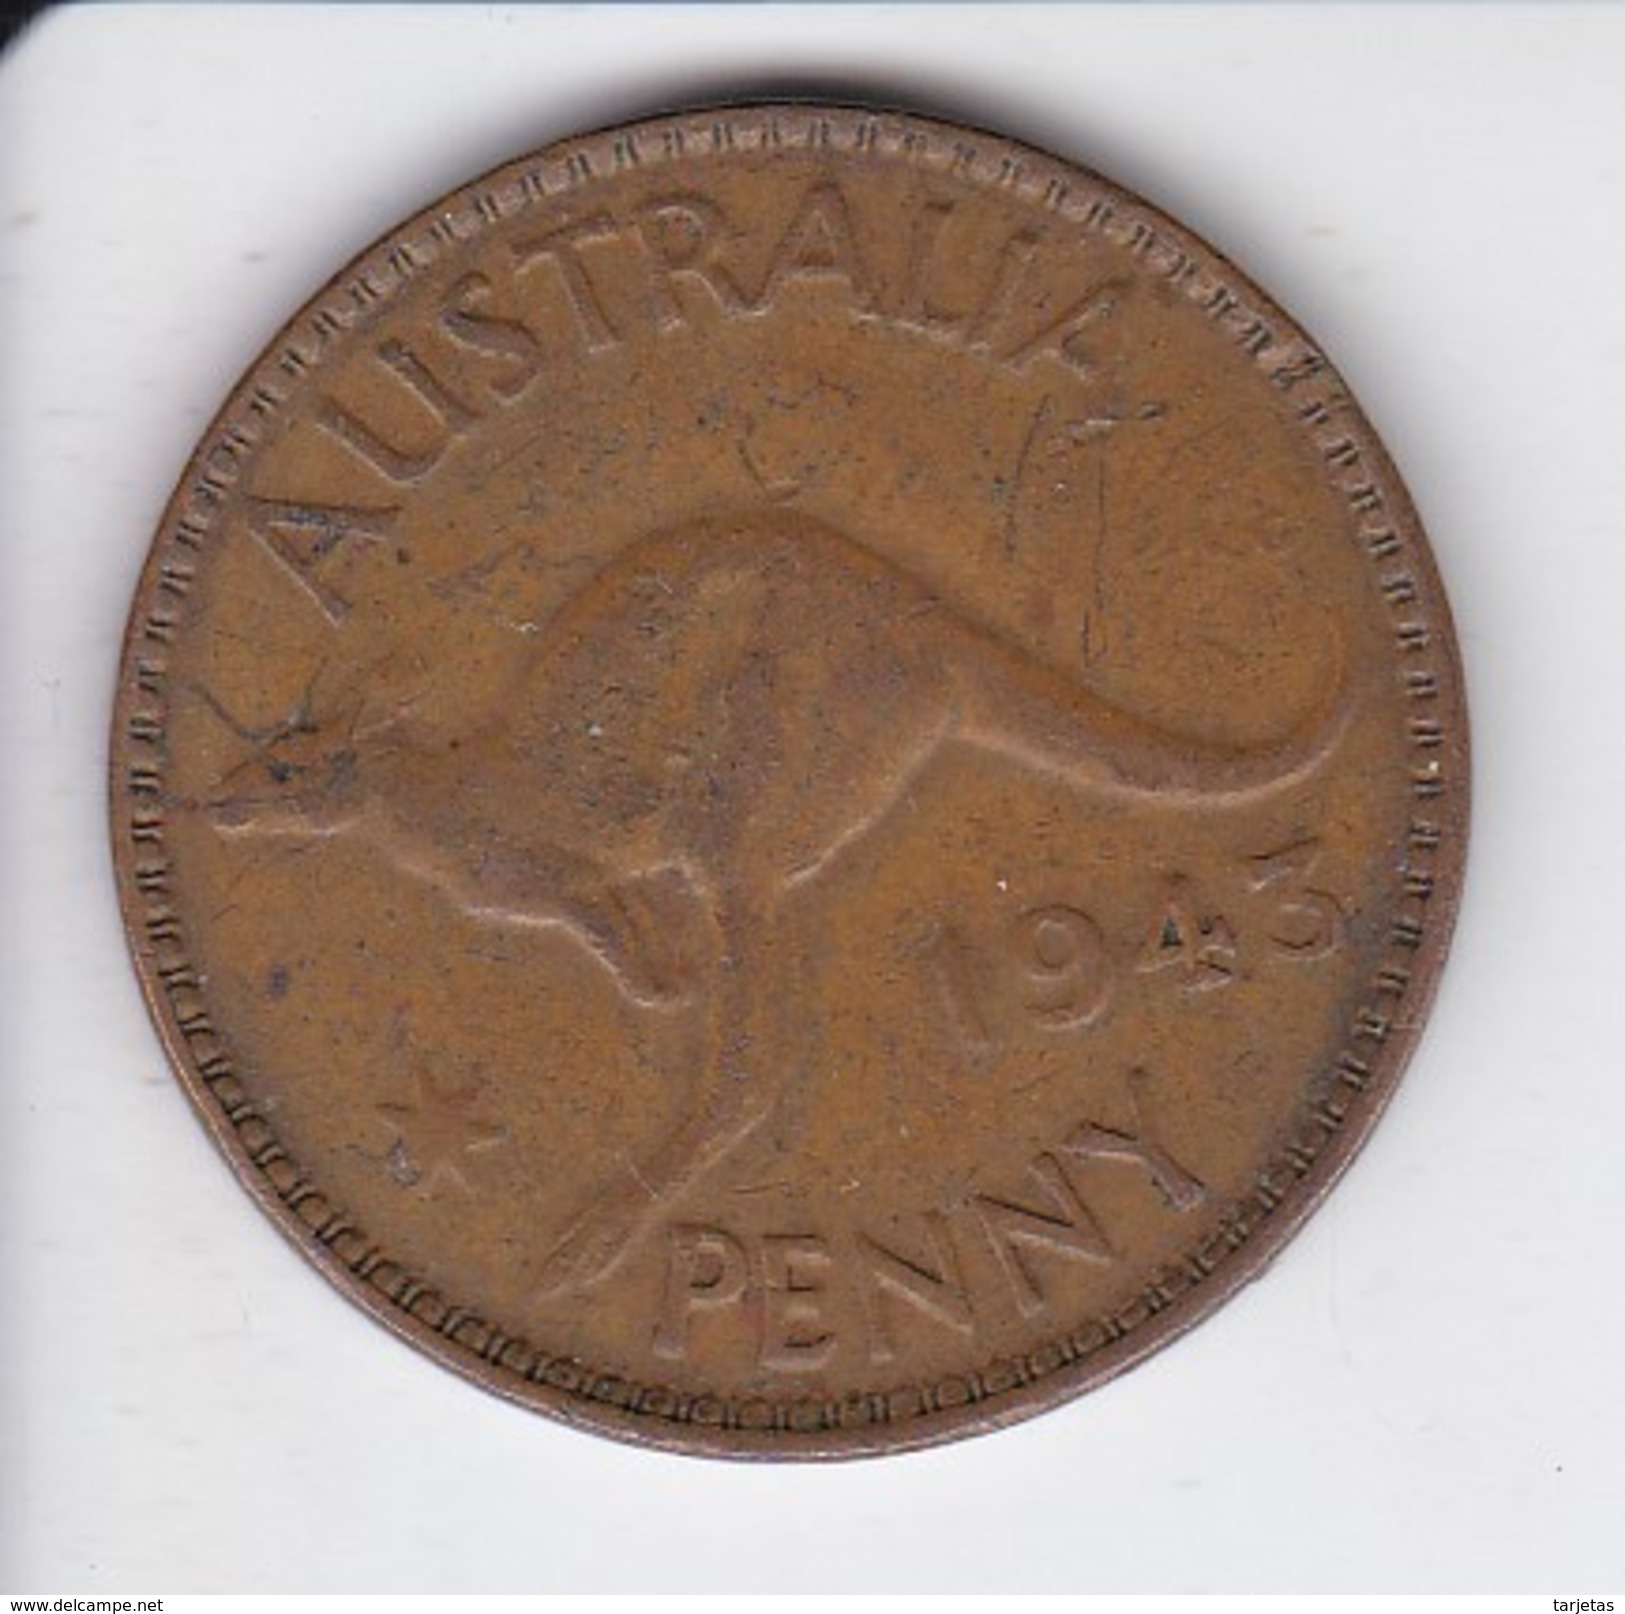 MONEDA DE AUSTRALIA DE 1 PENNY DEL AÑO 1943 CANGURO (KANGAROO) - Penny